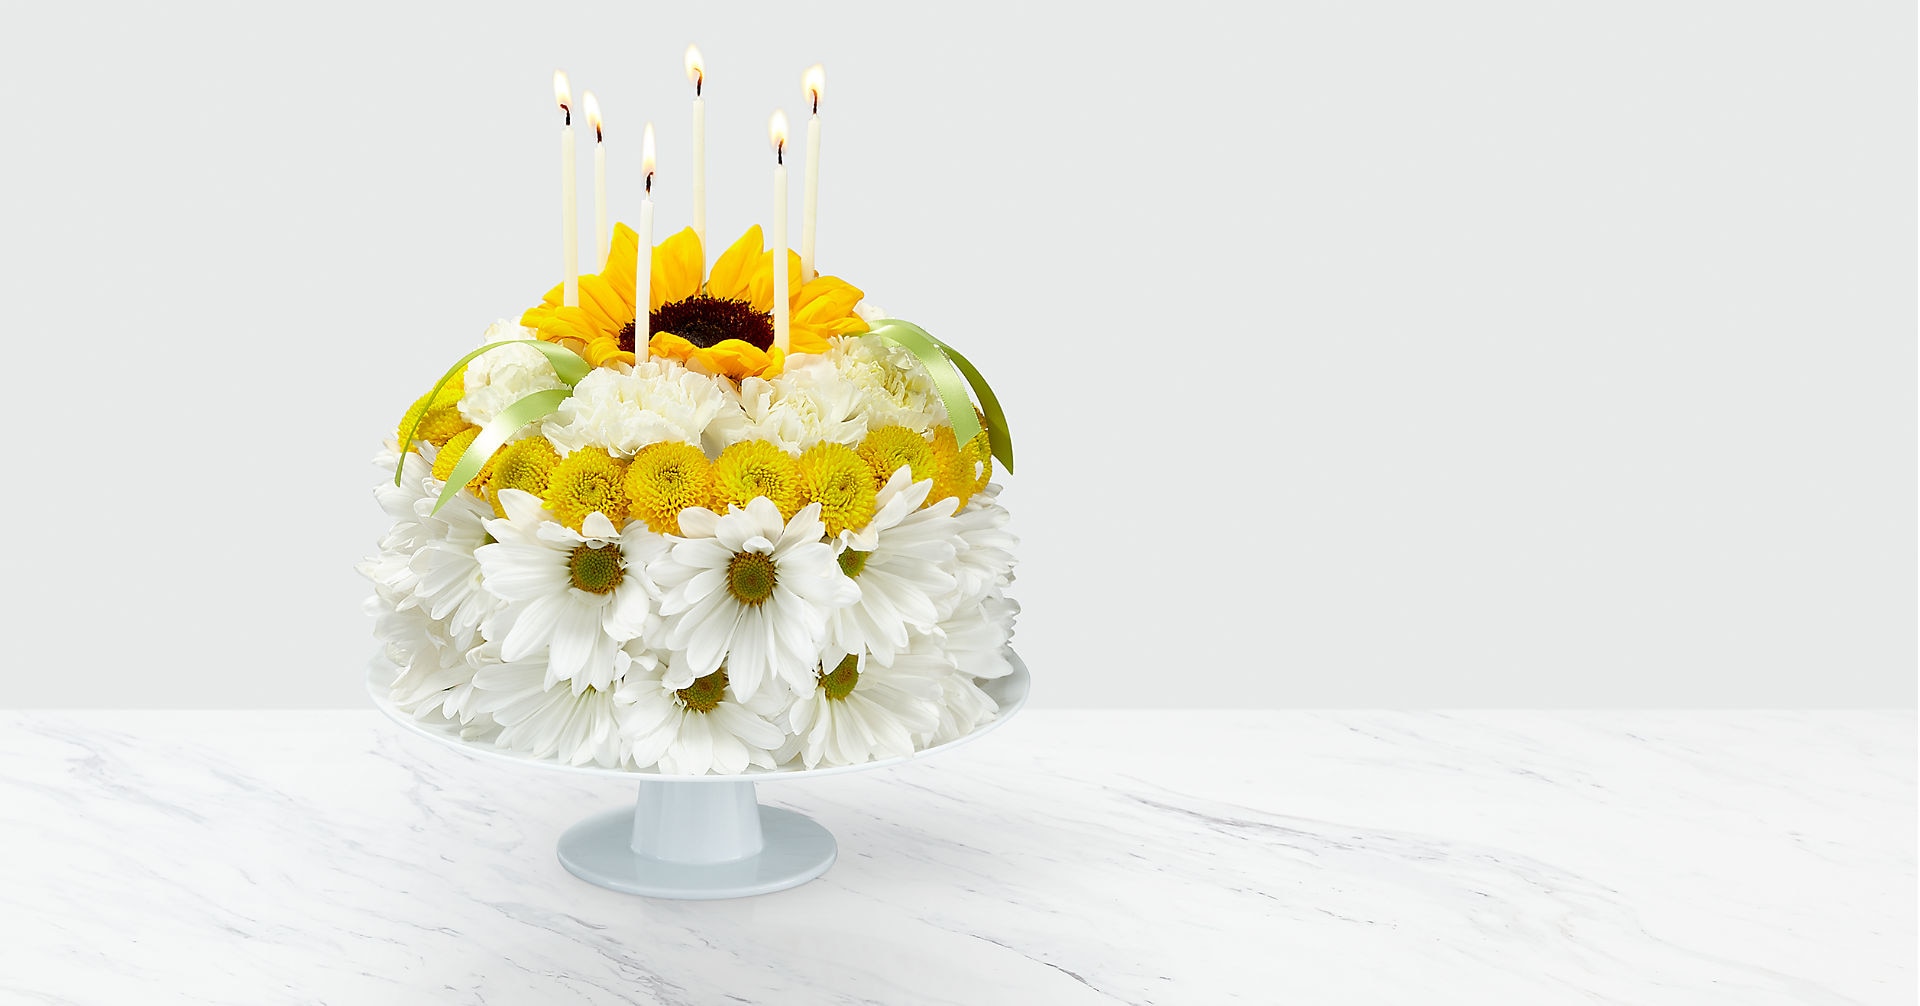 Birthday Smiles - Yellow & White Floral Cake